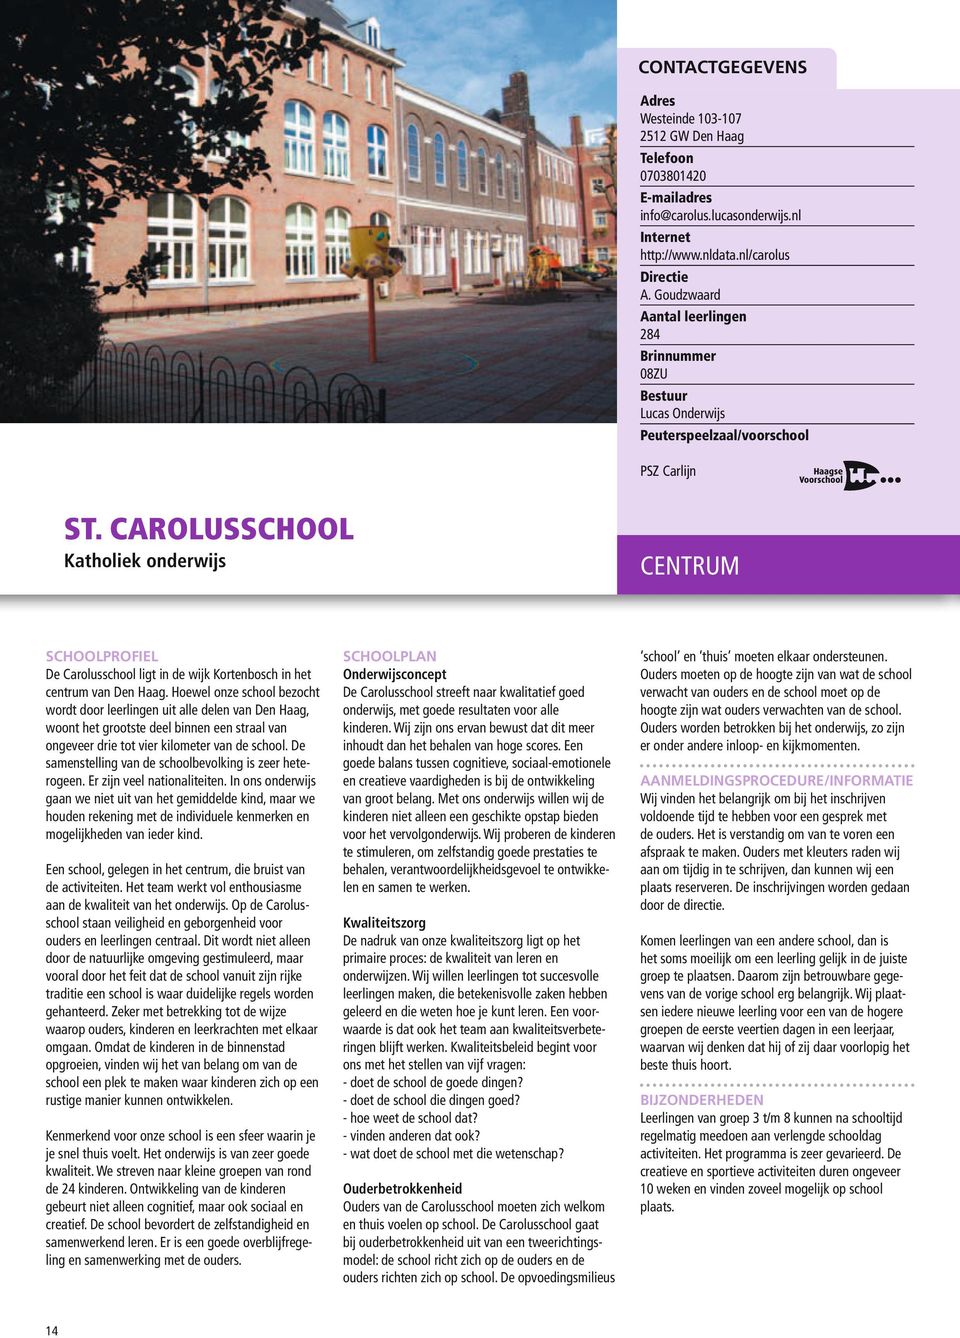 Hoewel onze school bezocht wordt door leerlingen uit alle delen van Den Haag, woont het grootste deel binnen een straal van ongeveer drie tot vier kilometer van de school.